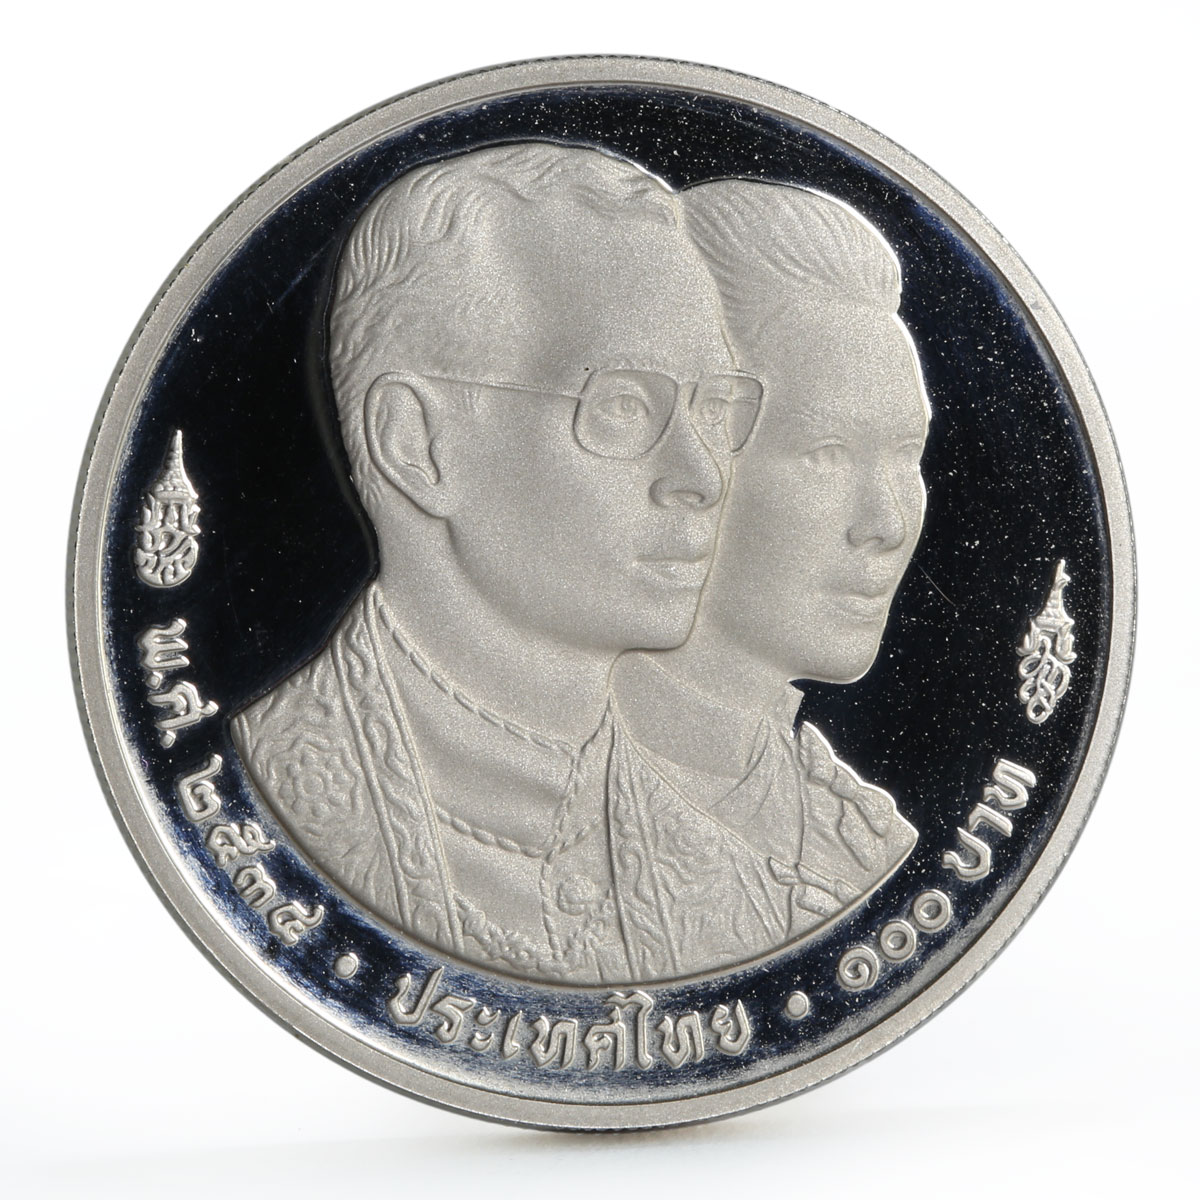 Thailand 100 baht International Monetary Fund Mythical Bird proof CuNi coin 1991